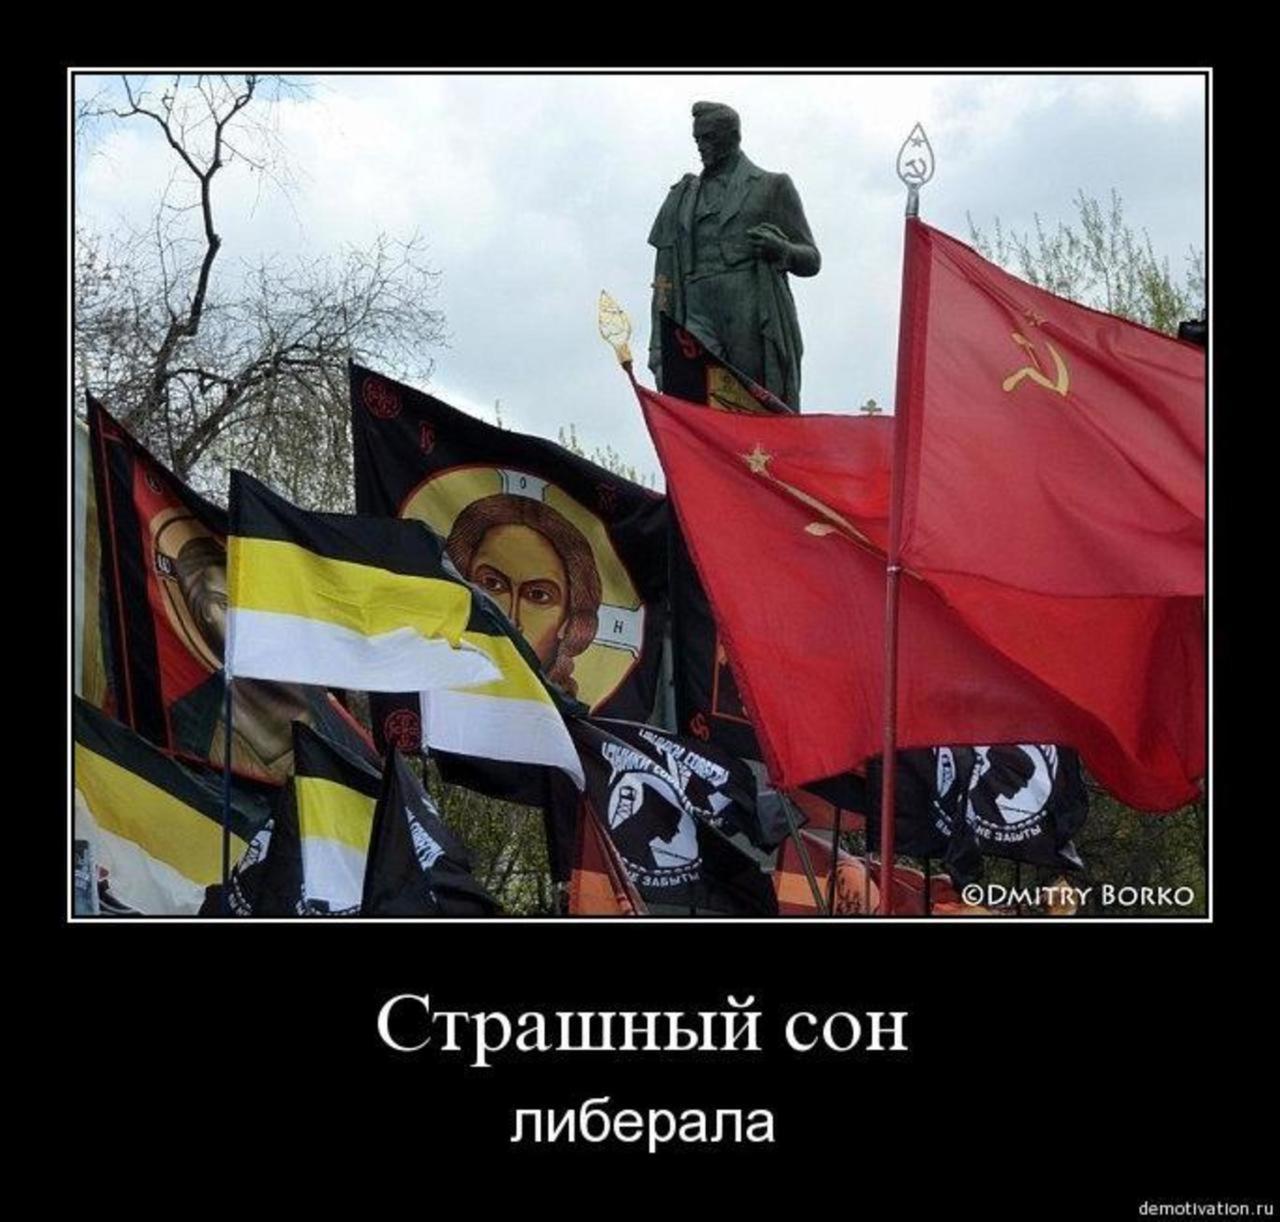 Власти придут народ. Националисты и коммунисты. Русские коммунисты националисты. Христианский национализм. Российские националисты против коммунистов.